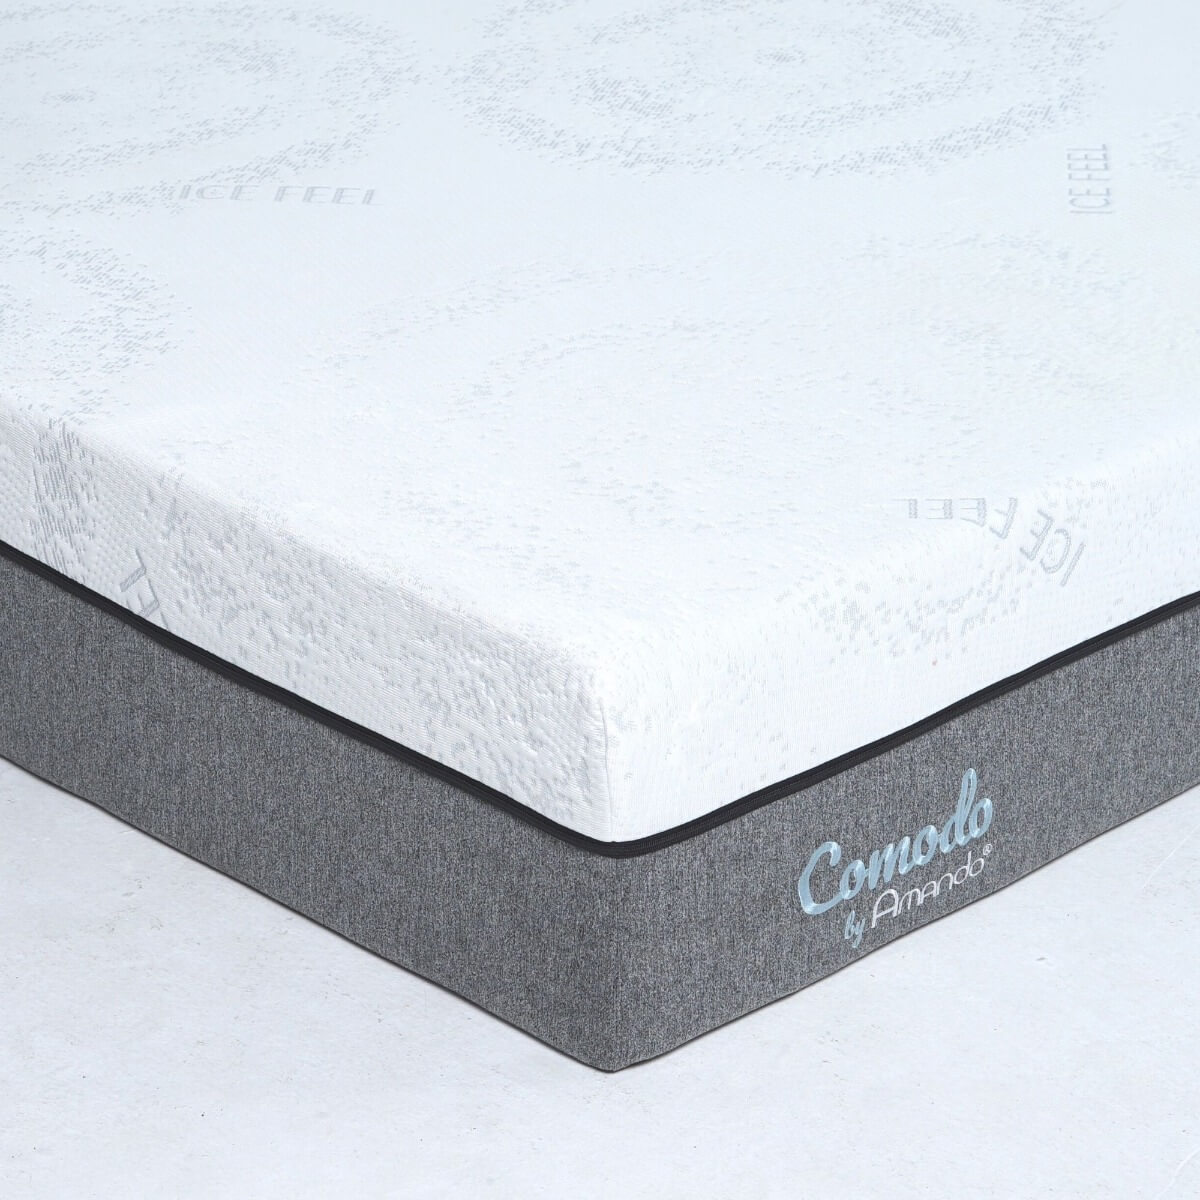 Nệm Foam Amando Comodo Luxury là sản phẩm được đánh giá cao nhất về độ thoáng khí